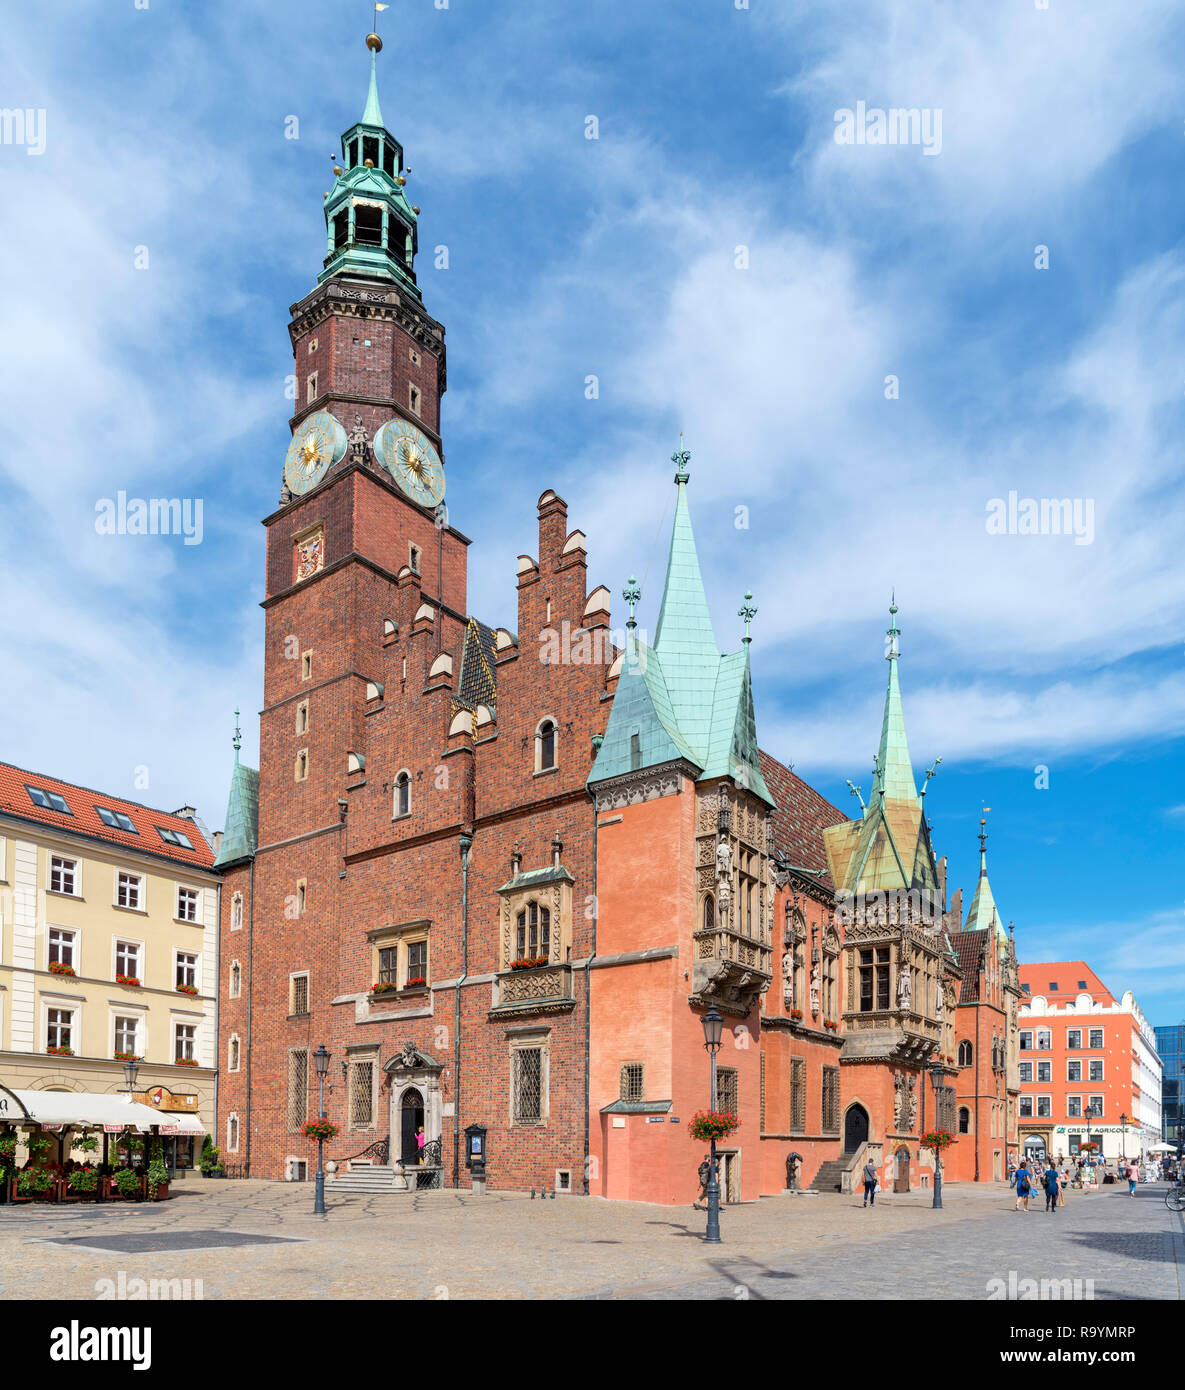 L'Ancien hôtel de ville (Ratusz), la place du marché (Rynek we Wrocławiu), Wroclaw, Silésie, Pologne Banque D'Images